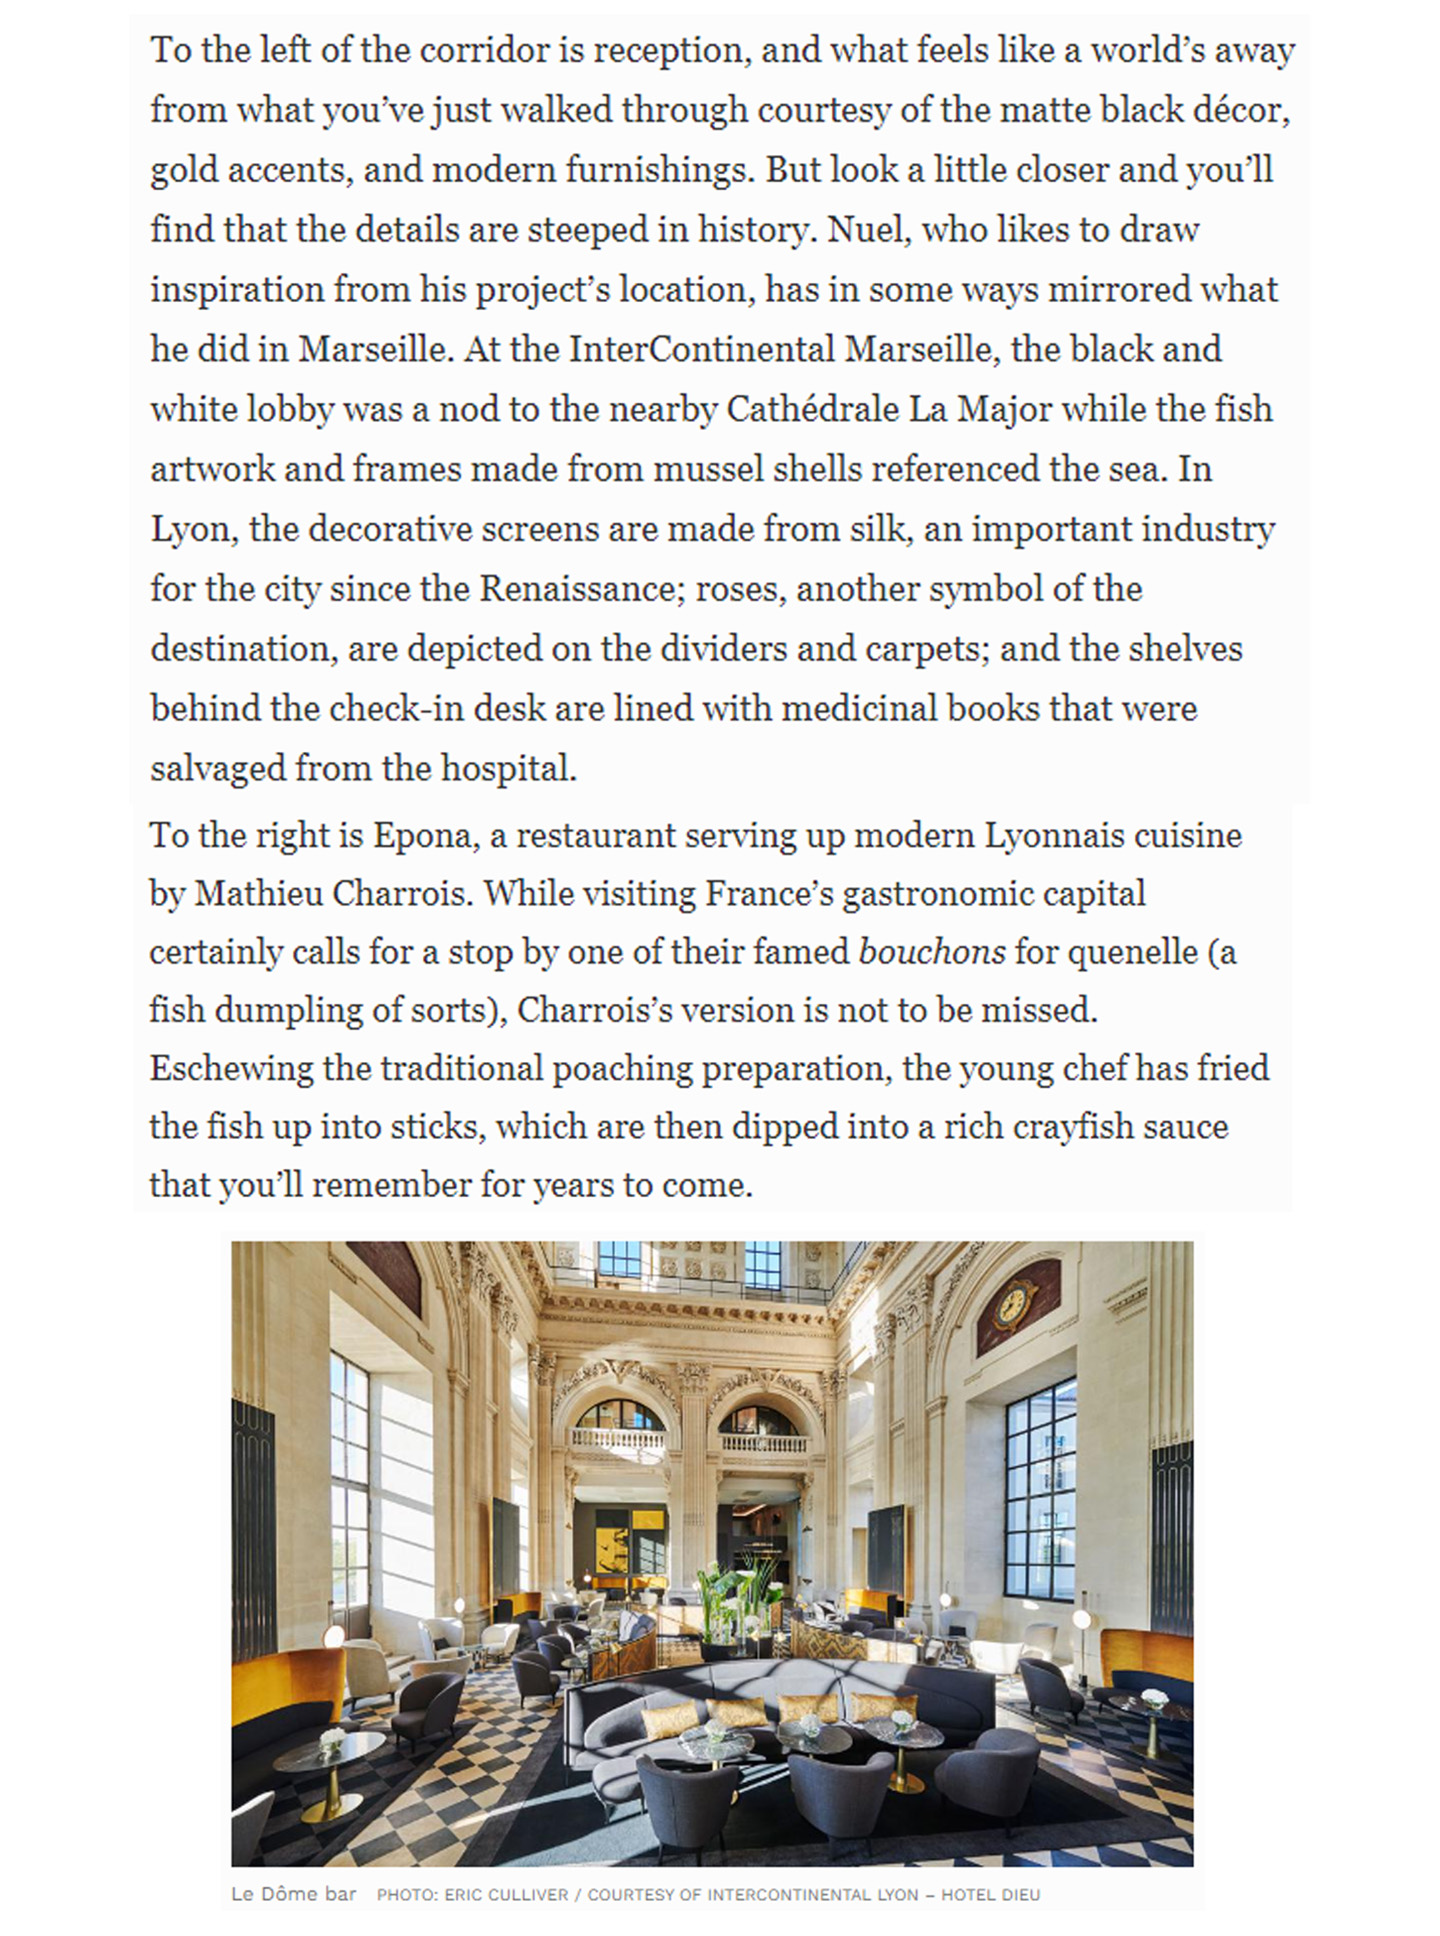 Article sur l'InterContinental Lyon Hotel Dieu réalisé par le studio Jean-Philippe Nuel dans le magazine Forbes, nouvel hotel de luxe, architecture d'intérieur de luxe, patrimoine historique